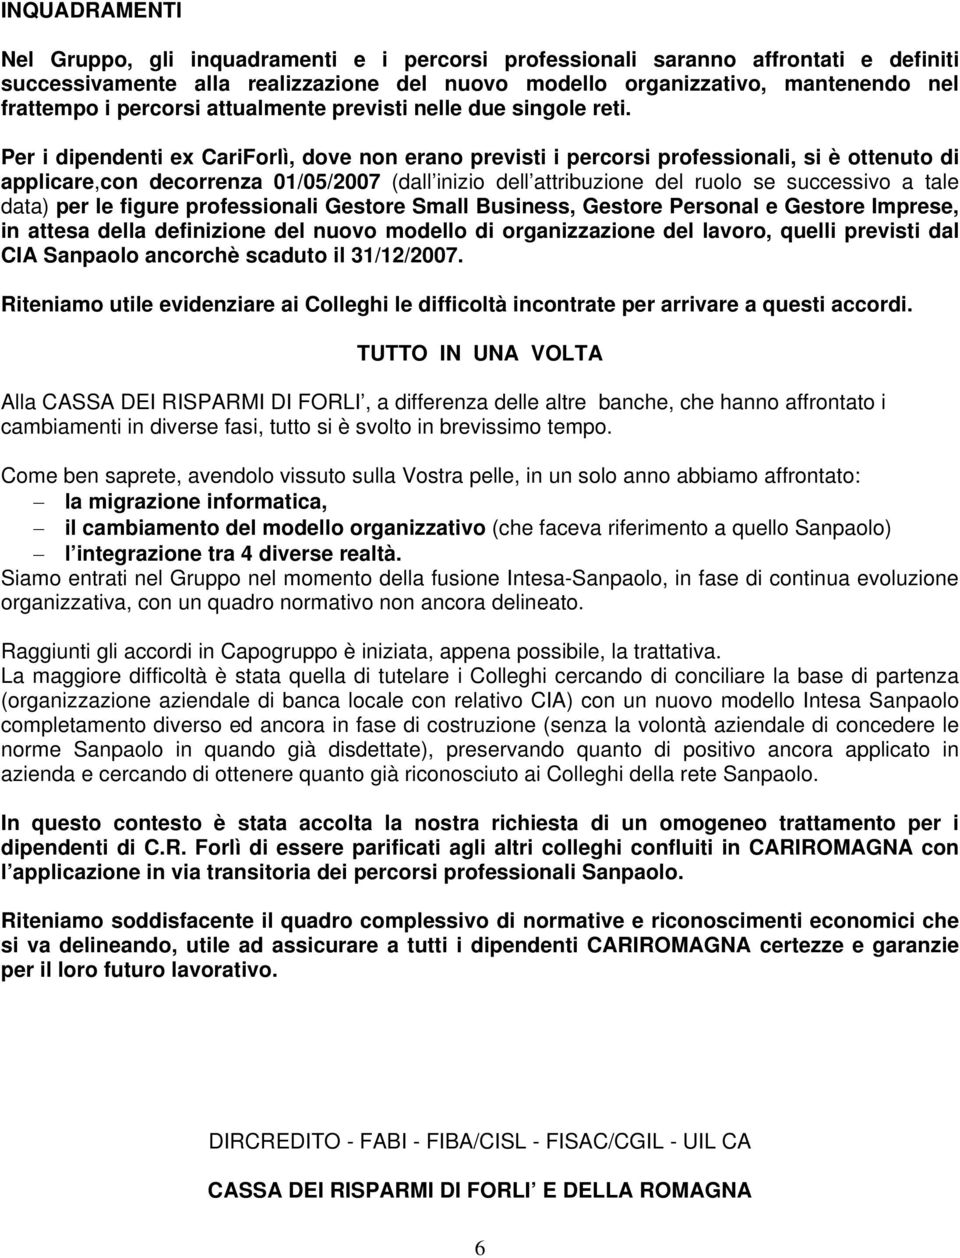 Per i dipendenti ex CariForlì, dove non erano previsti i percorsi professionali, si è ottenuto di applicare,con decorrenza 01/05/2007 (dall inizio dell attribuzione del ruolo se successivo a tale